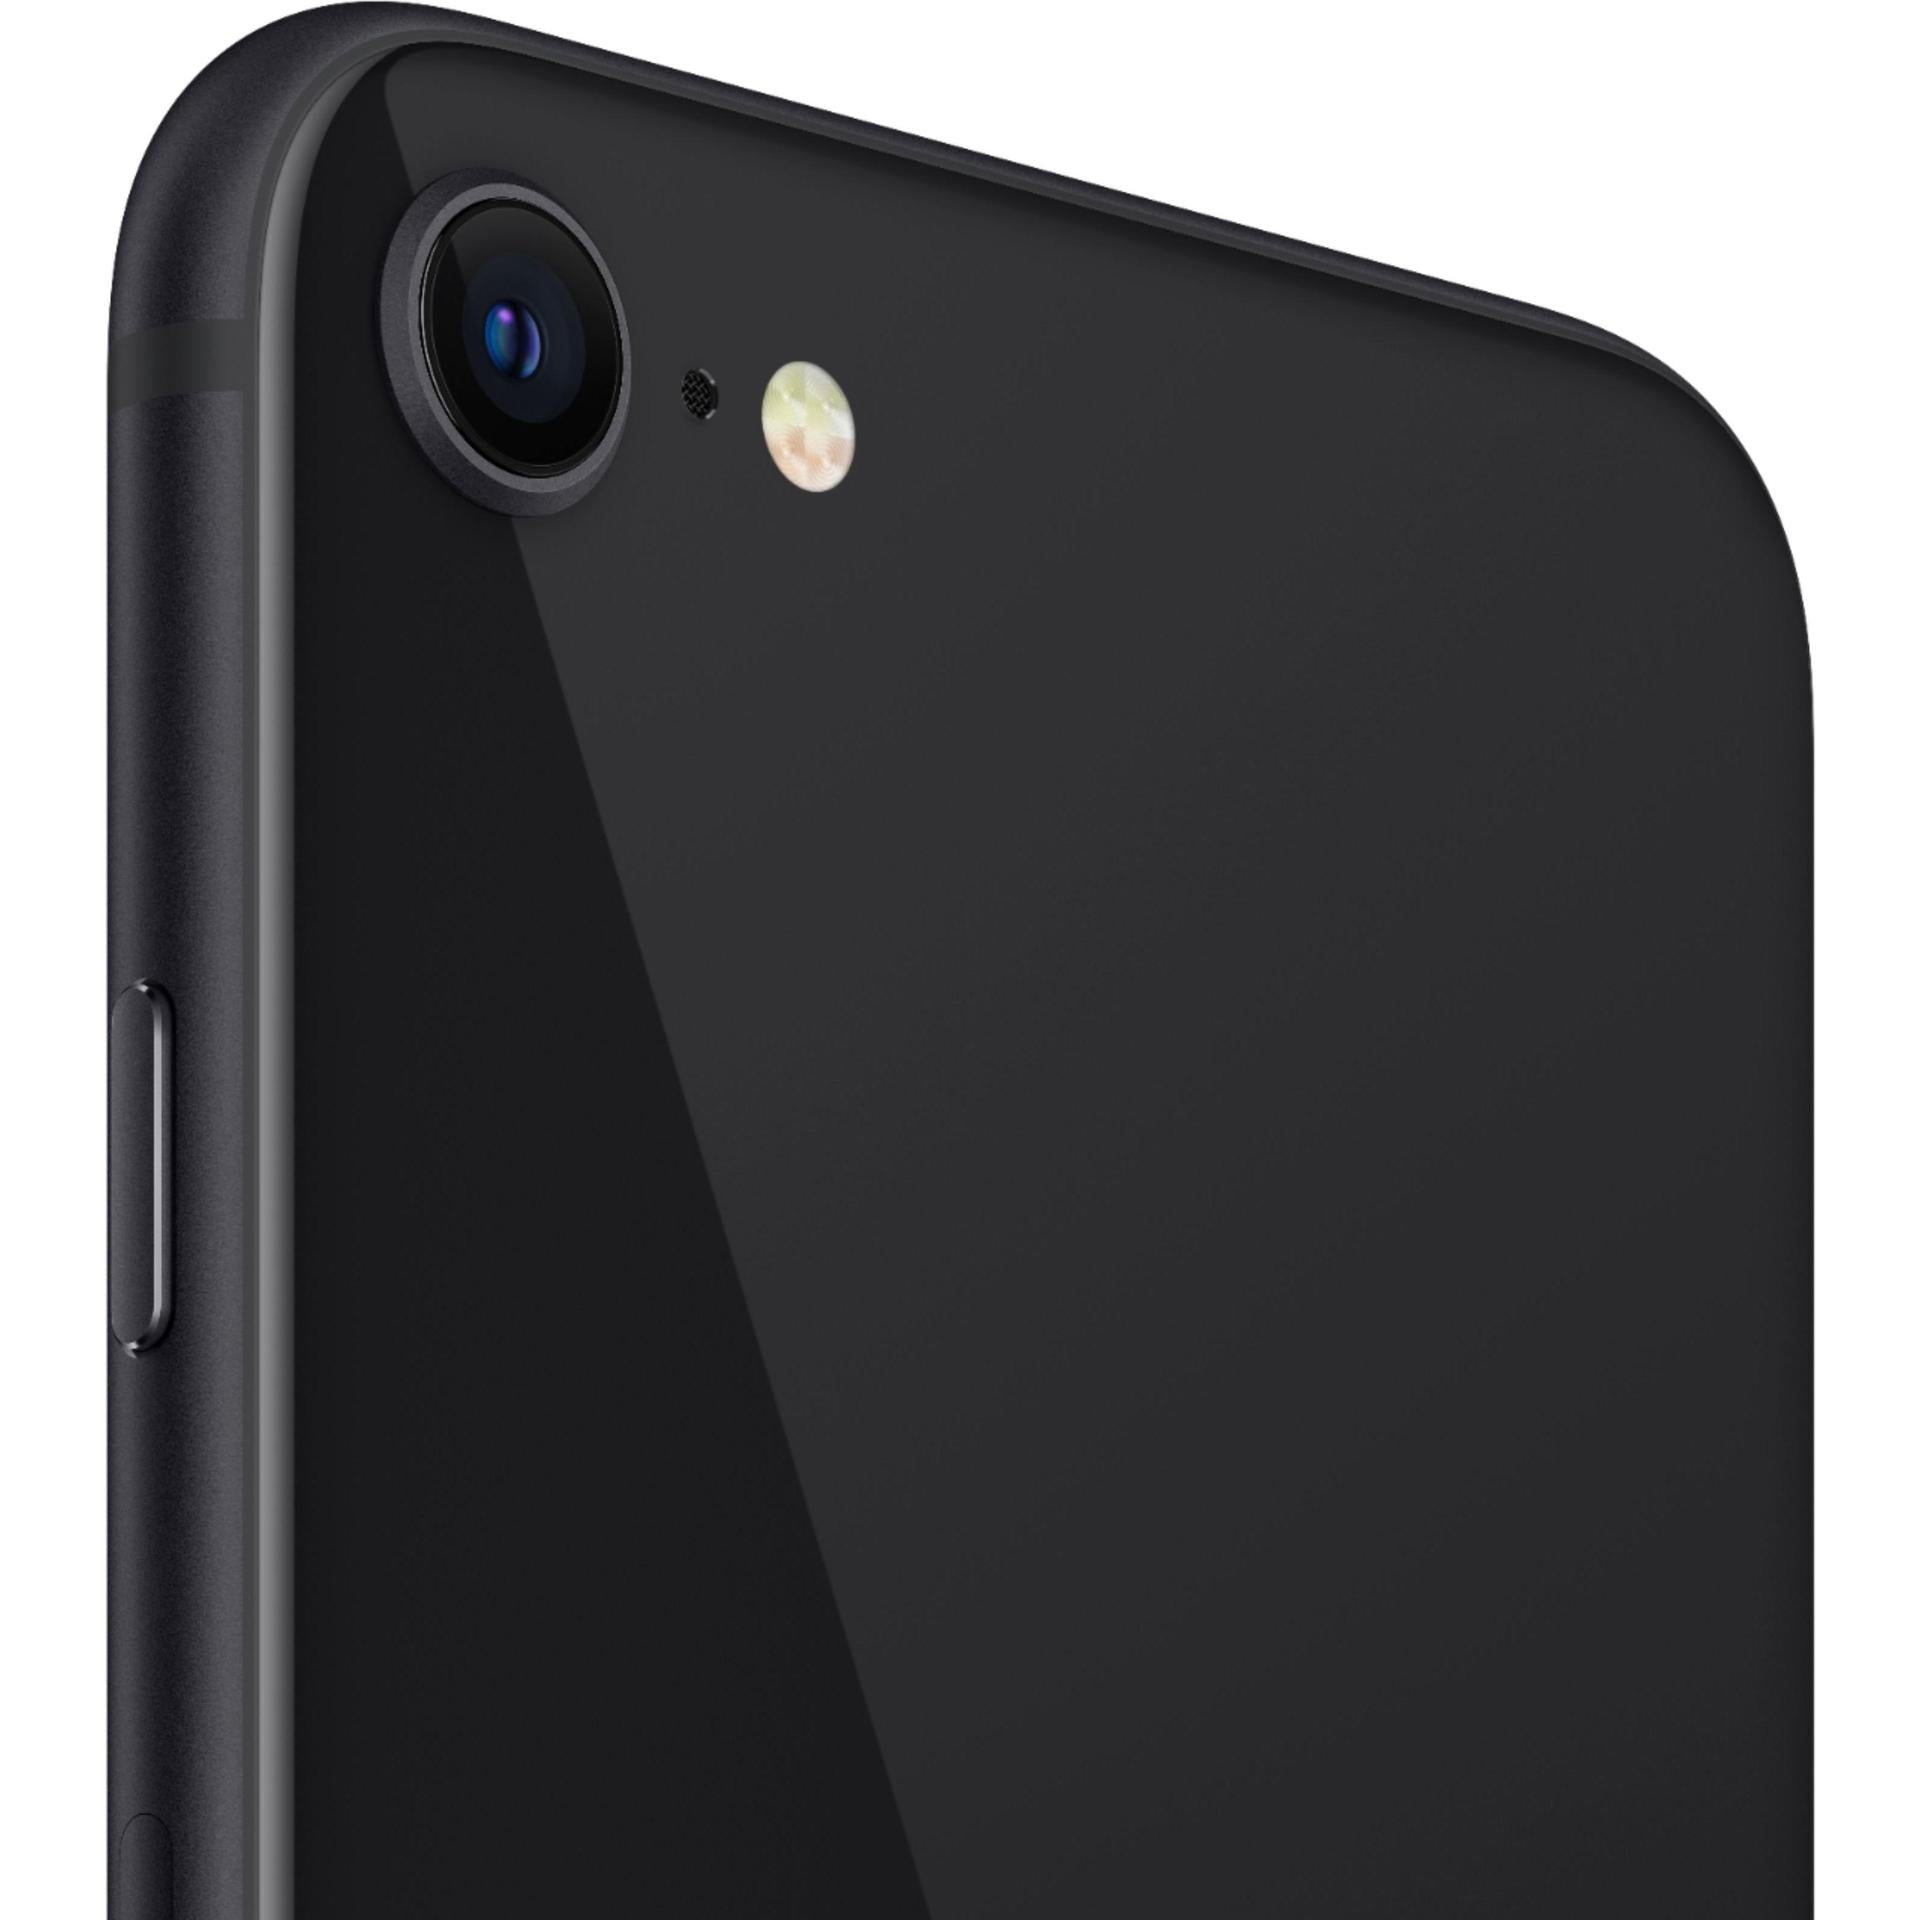 iPhone SE 2020 - Reacondicionado